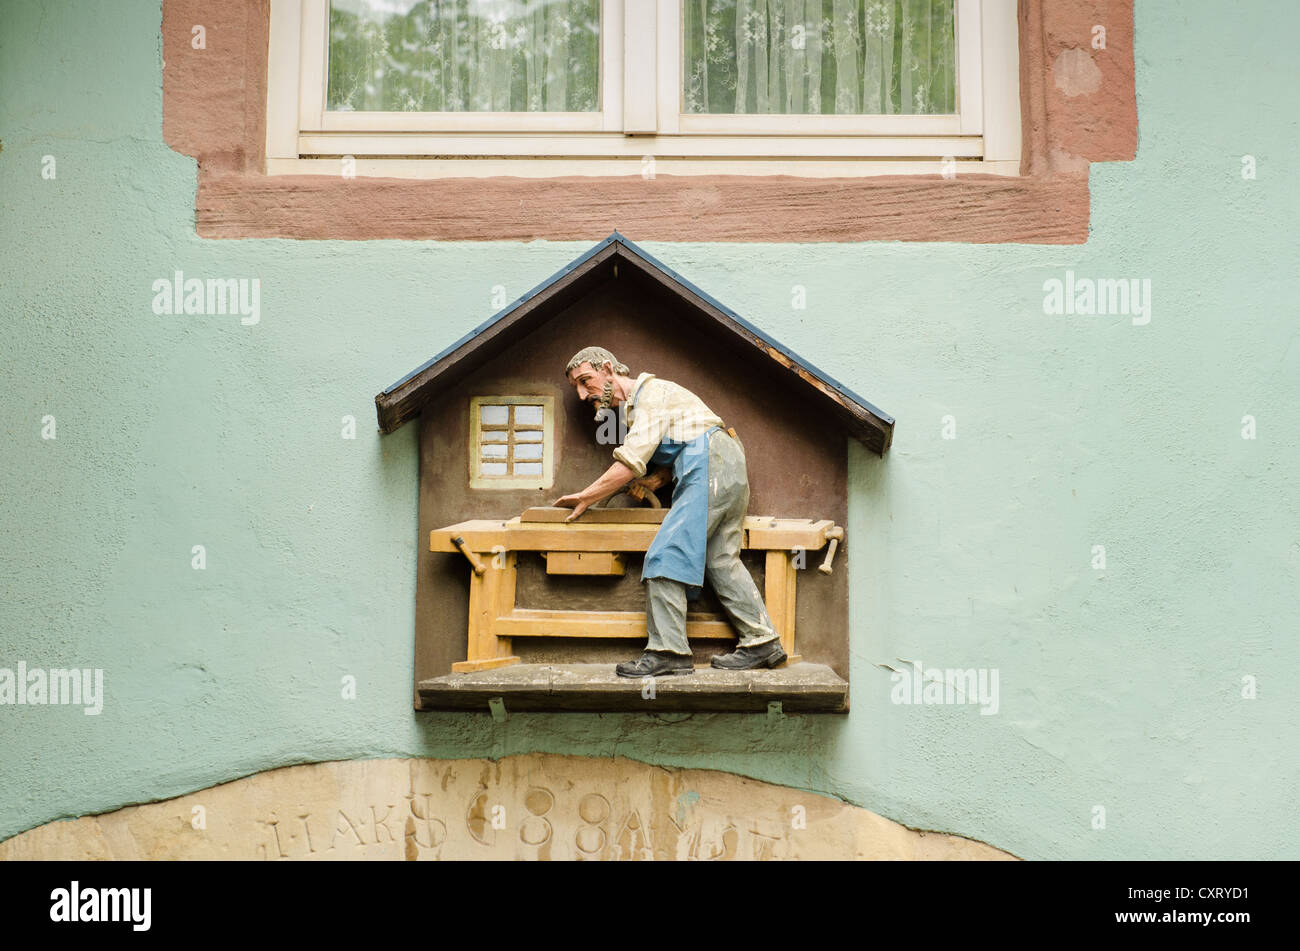 Simbolo di artigianato di un carpentiere o falegname sopra lo sportello anteriore di una vecchia casa nella città vecchia di Freiburg im Breisgau Foto Stock